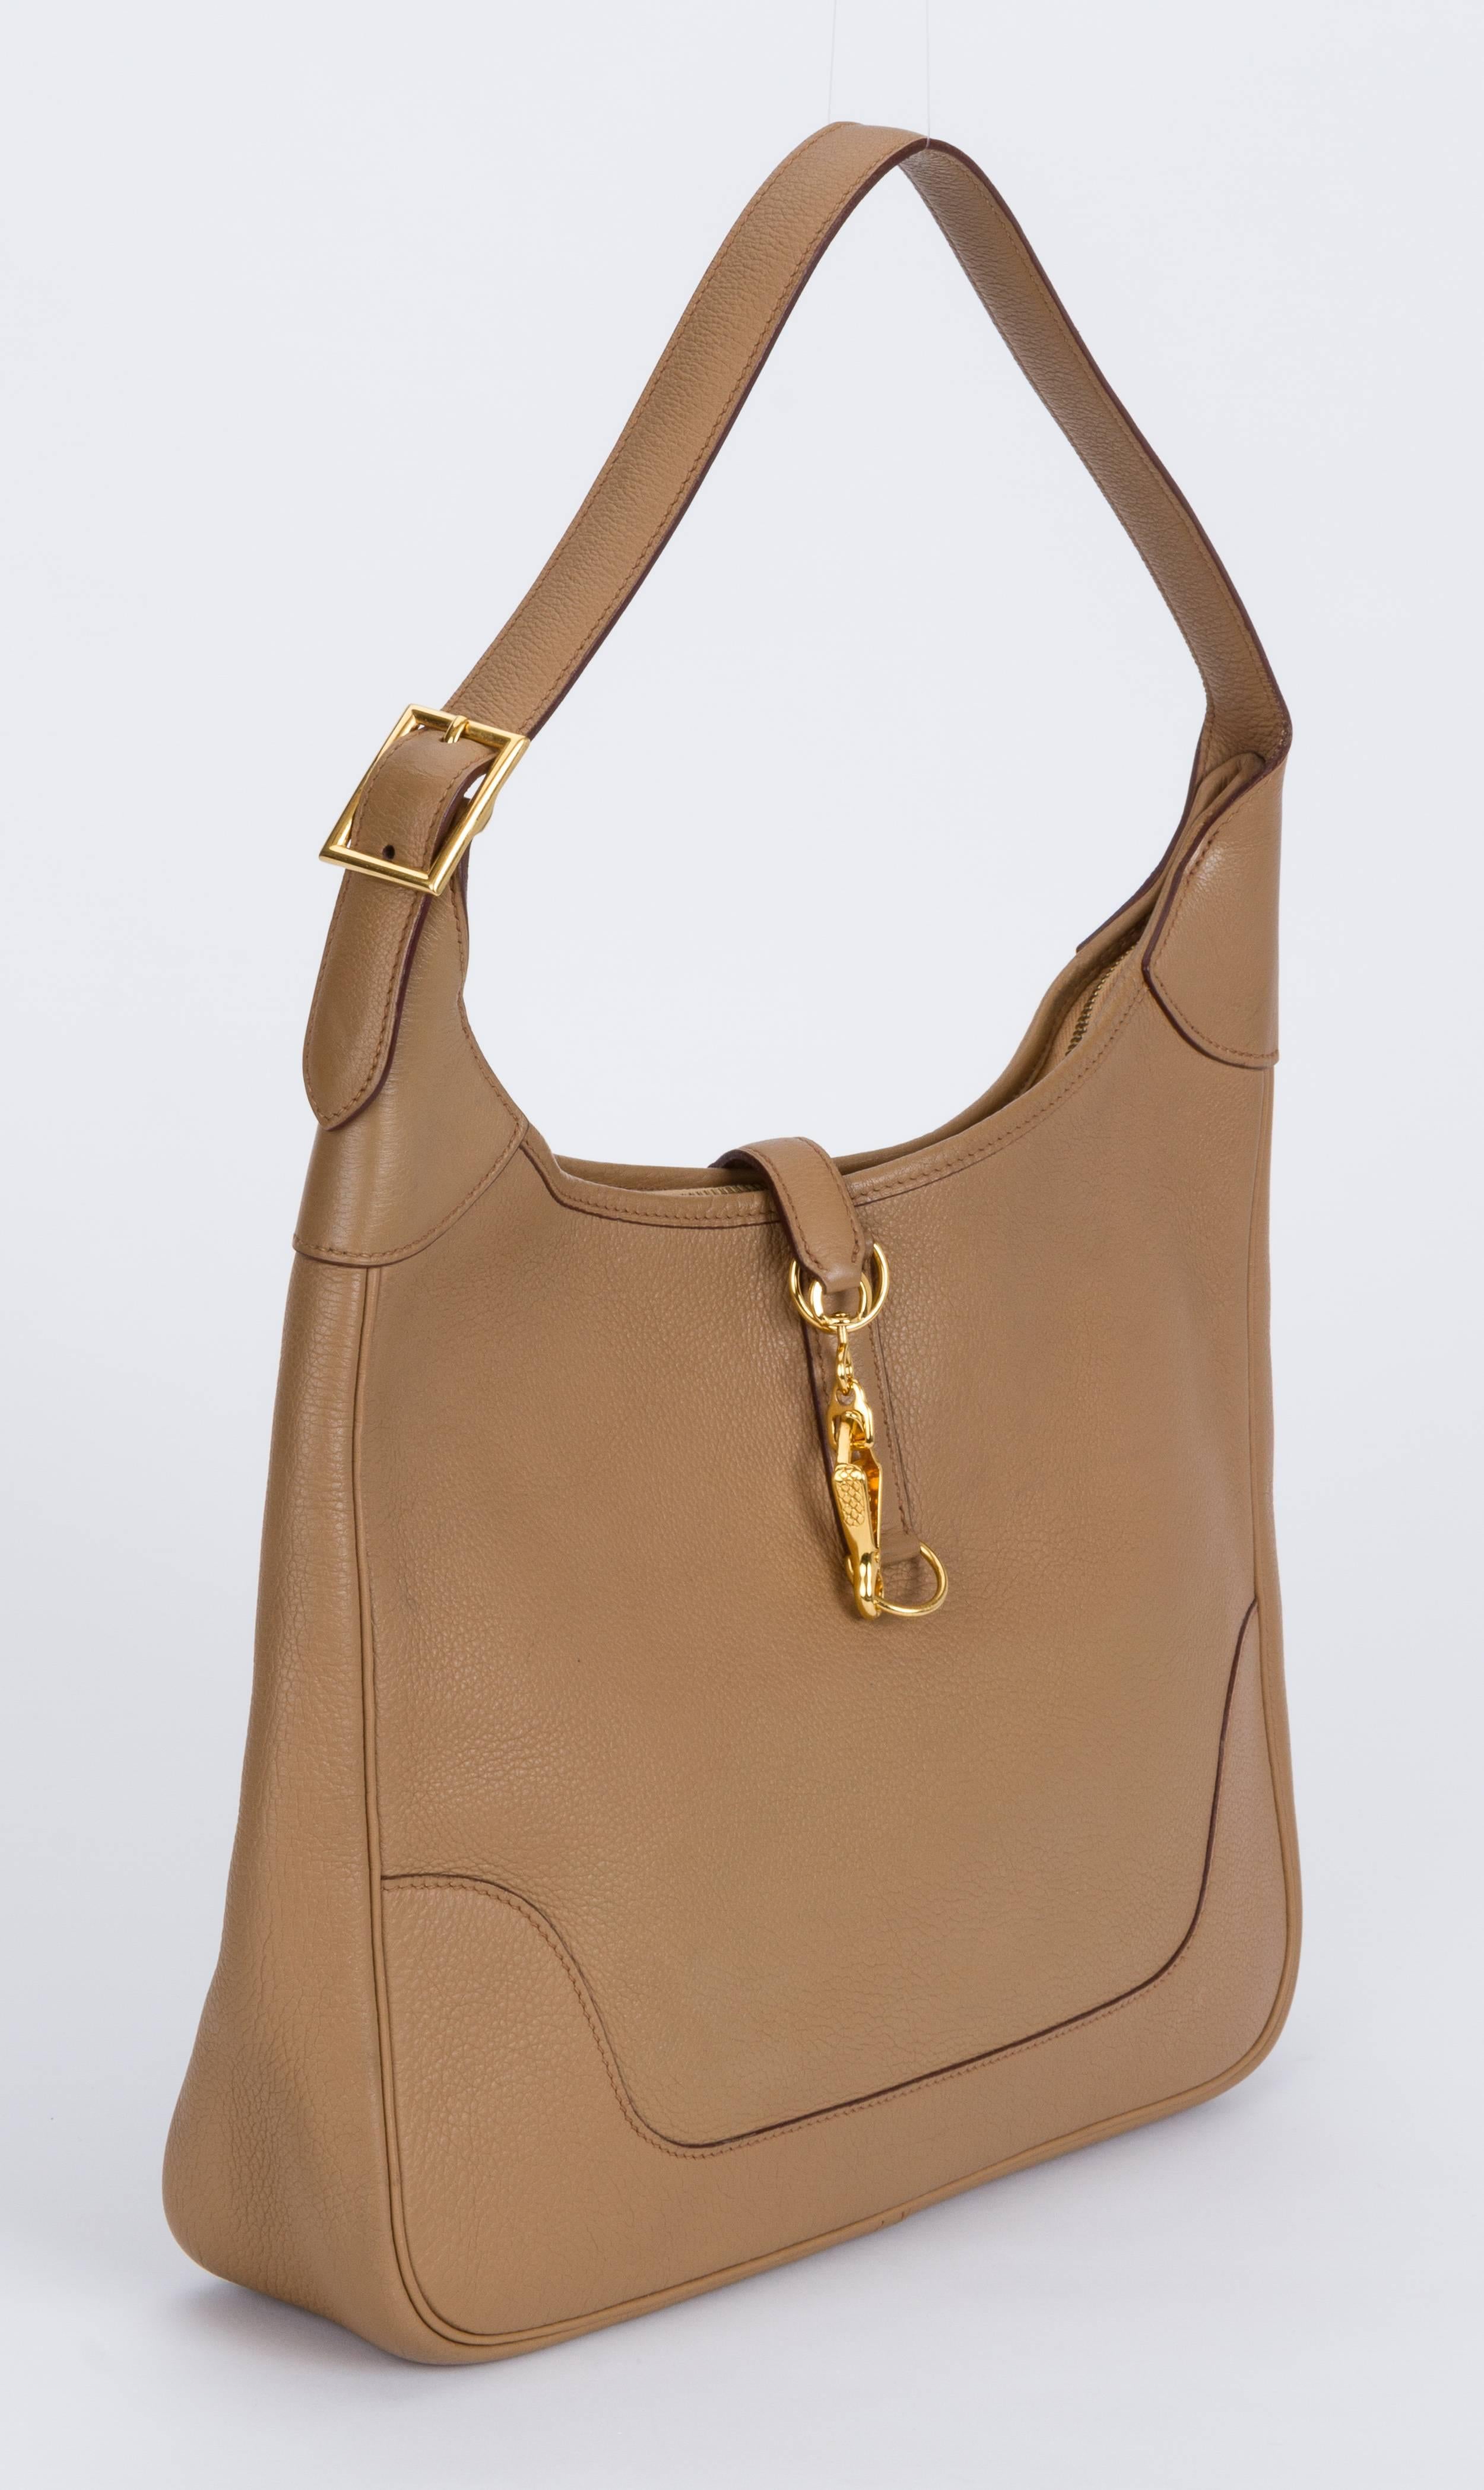 Hermes trim shoulder bag in light brown togo leather and toile interior. Excellent condition. Shoulder drop 11